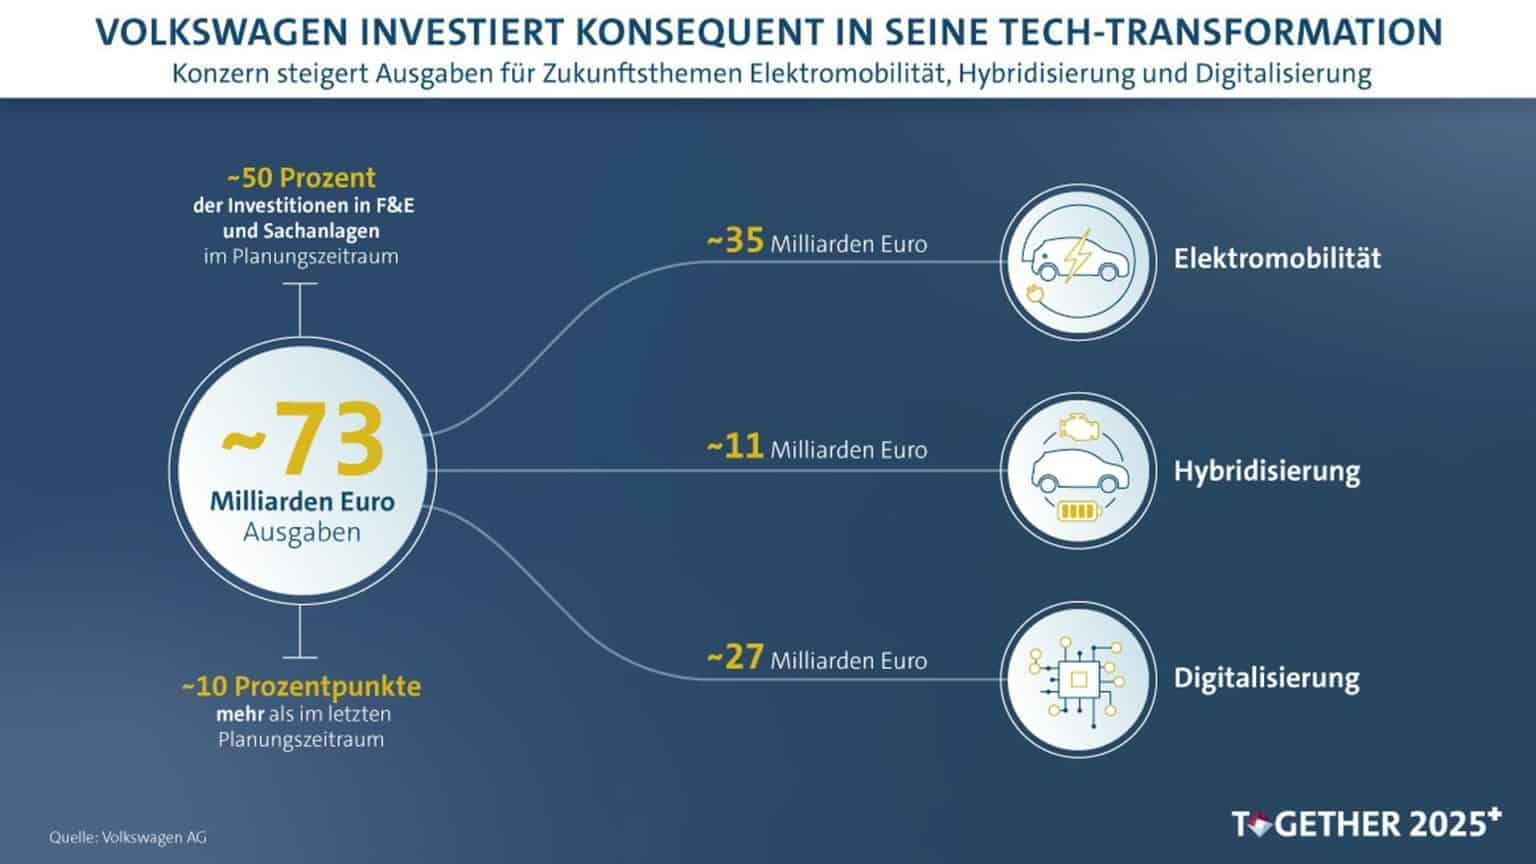 VW 5-Jahres-Plan sieht 73 Mrd. Euro Invest in E-Mobilität, Hybridisierung und Digitalisierung vor